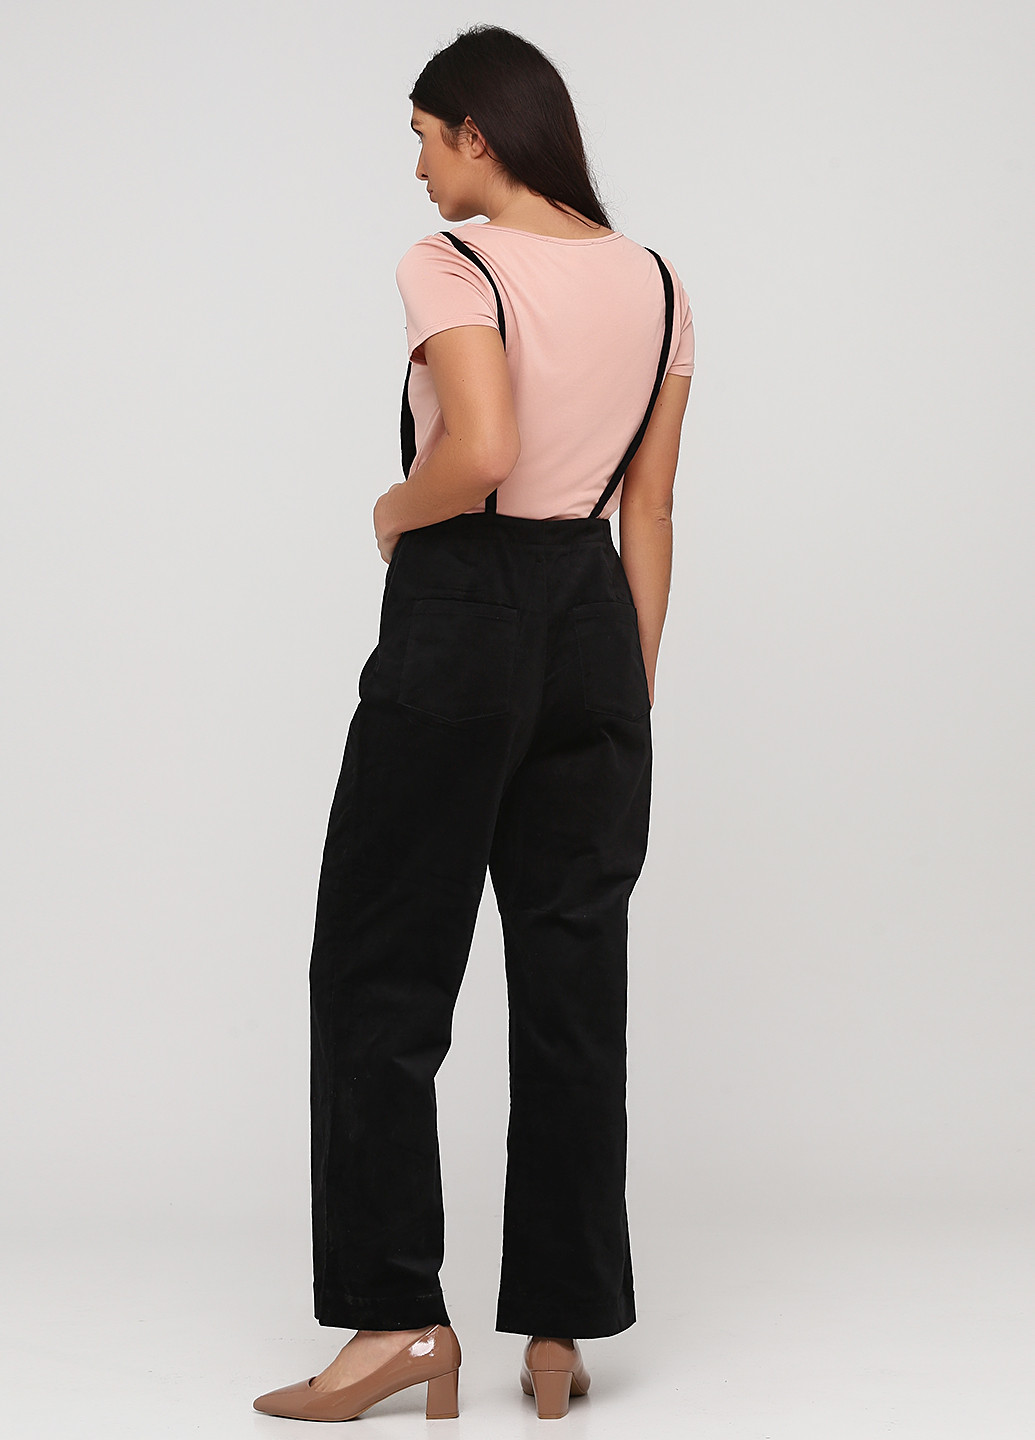 Комбинезон H&M комбинезон-брюки однотонный чёрный кэжуал велюр, хлопок